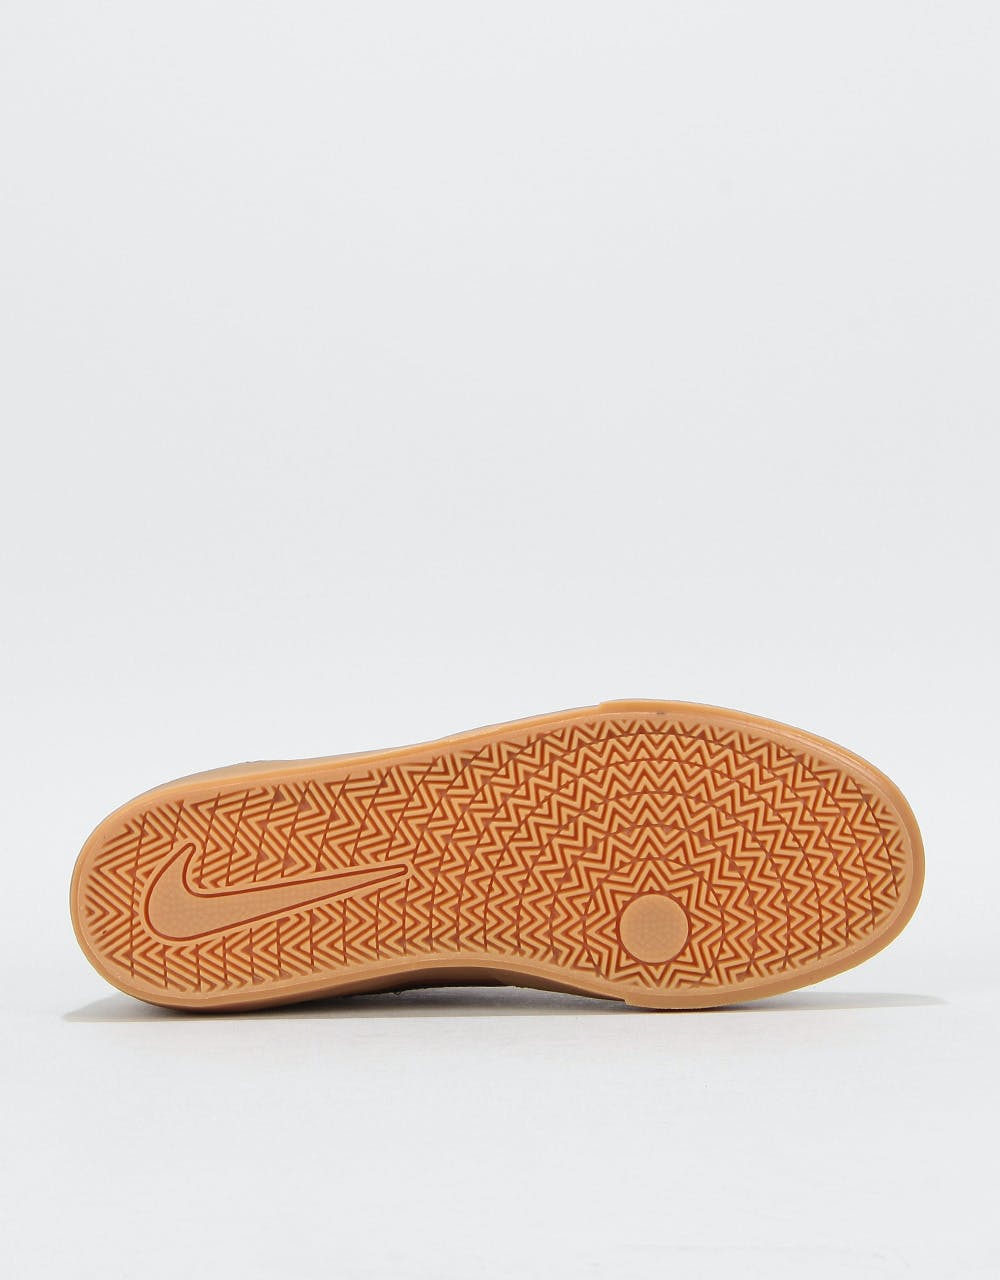 Nike SB Chron Solarsoft Skate Shoes - Lt British Tan/Black-Gum